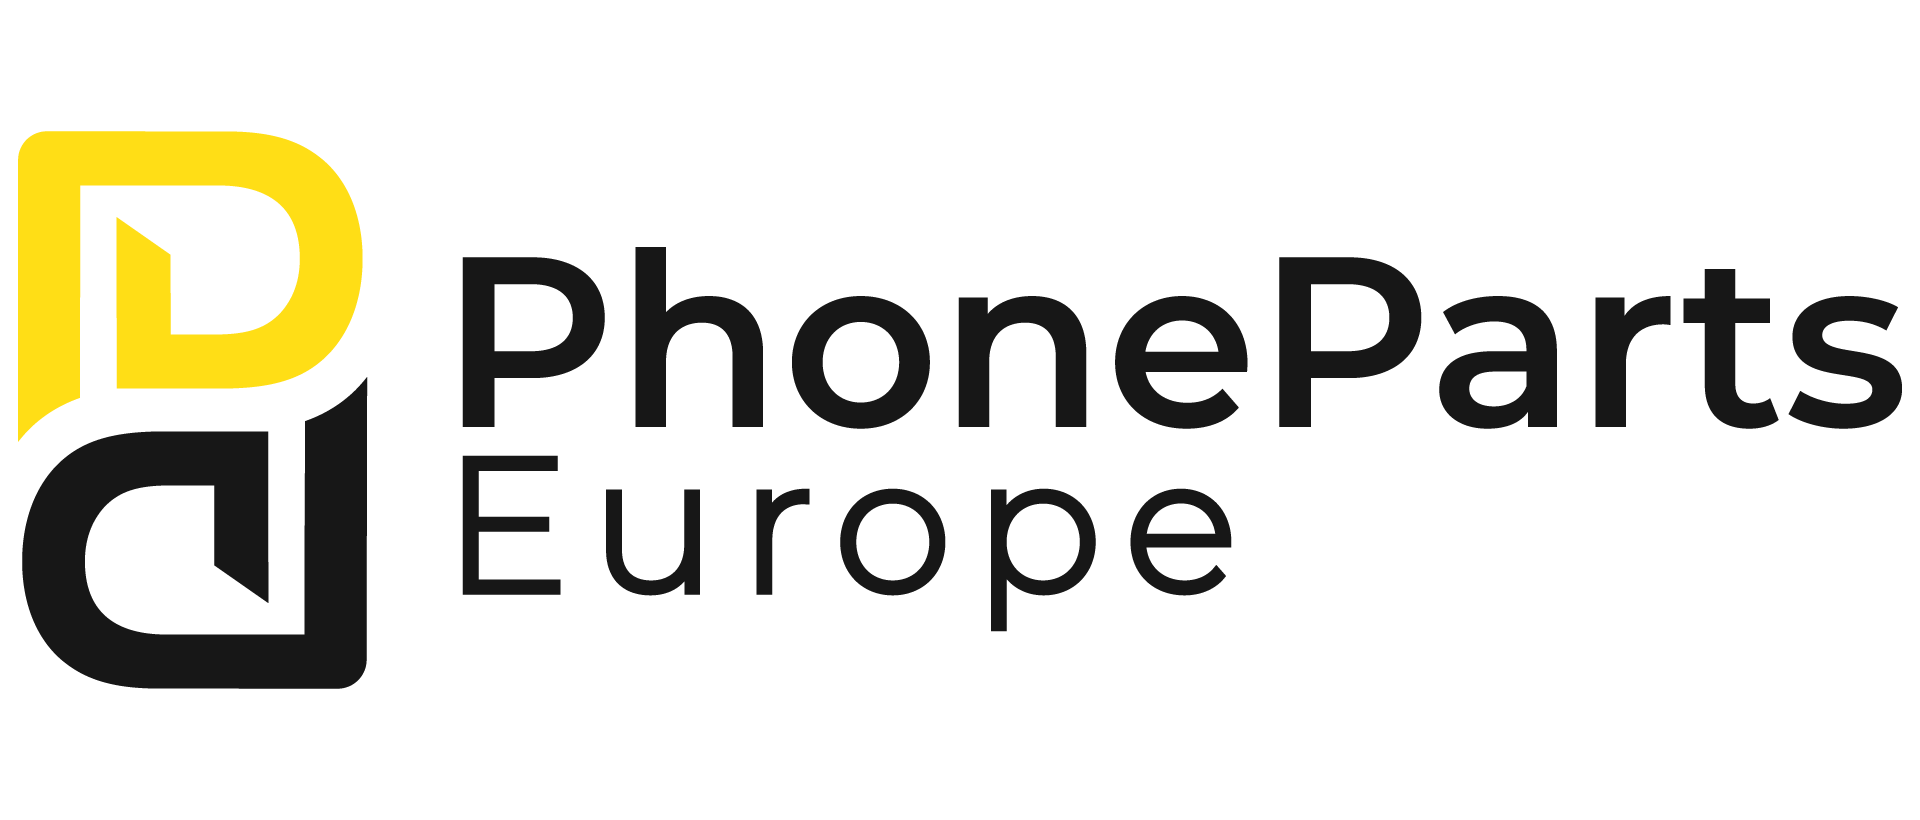 Phonepartseurope